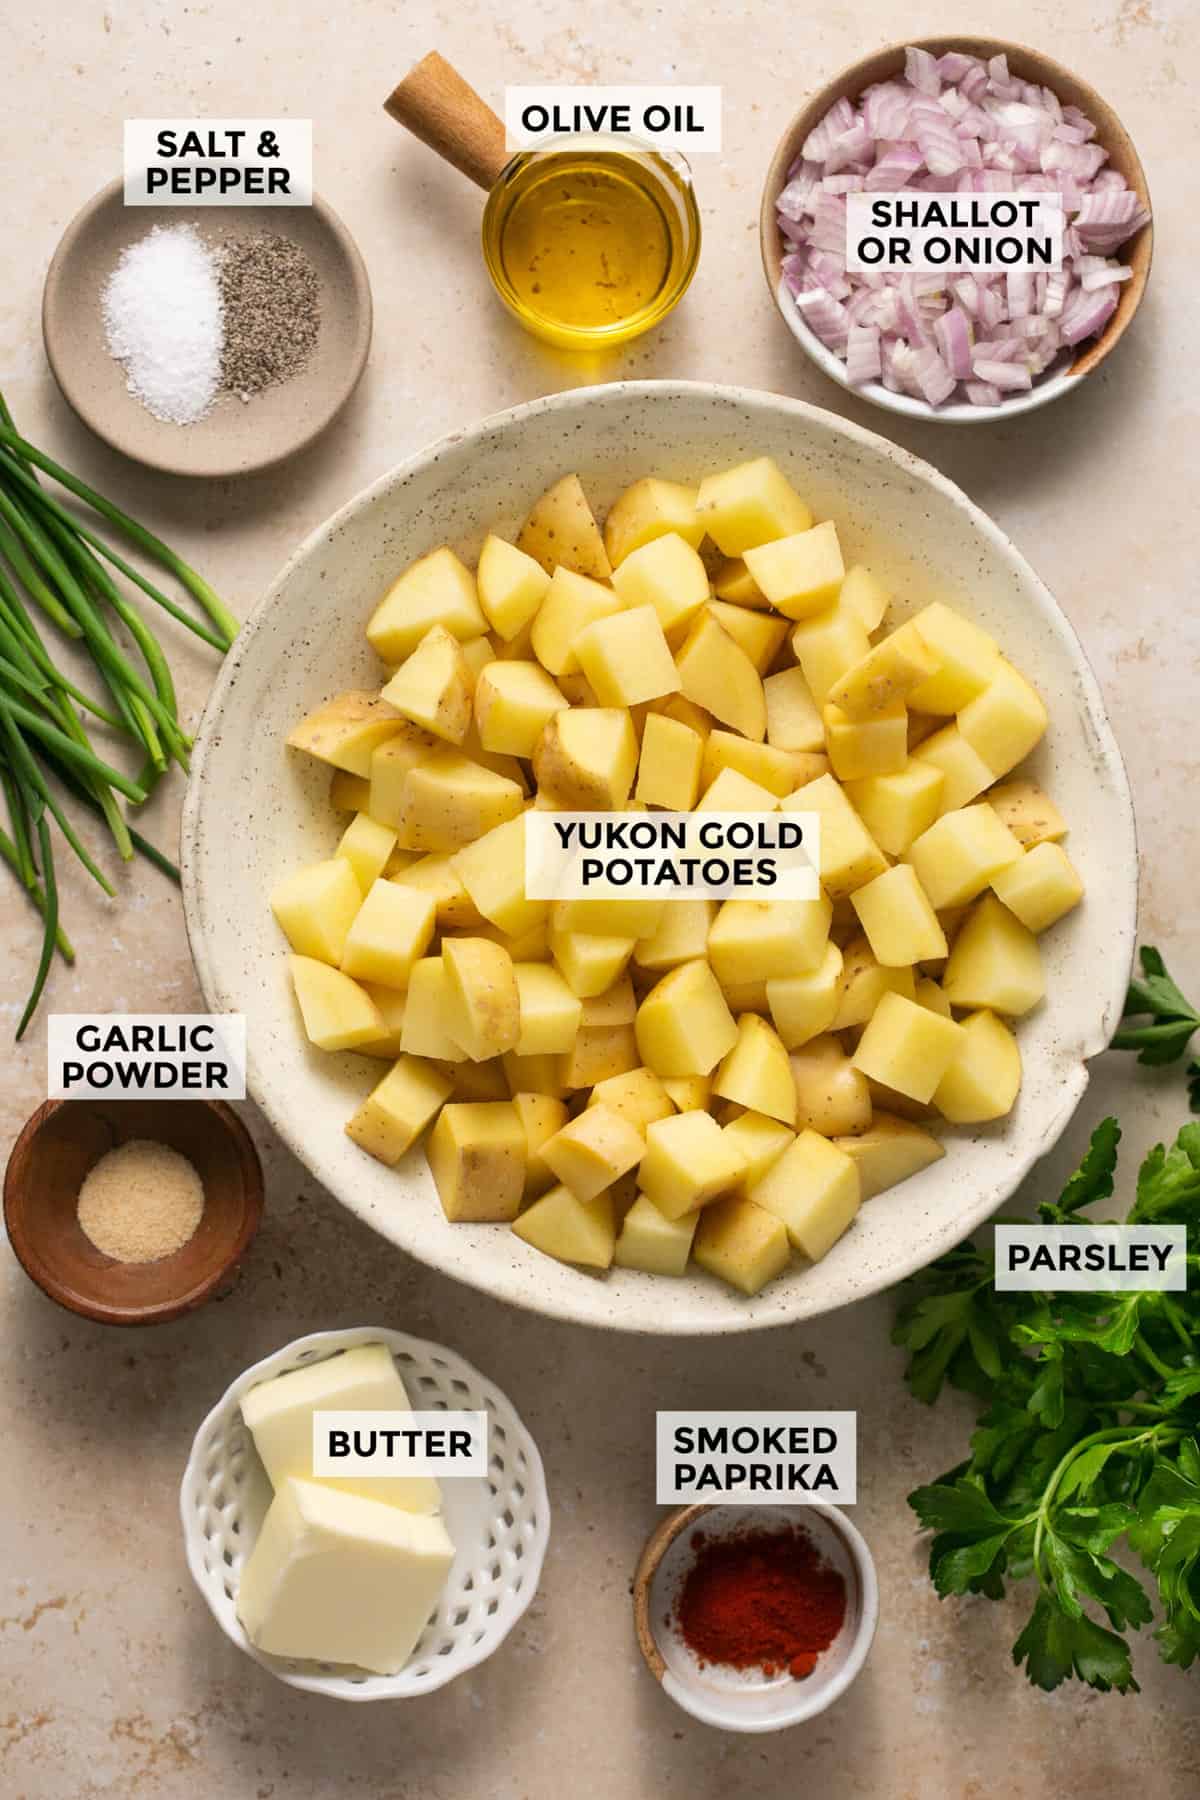 Skillet Breakfast Potatoes - Creme De La Crumb